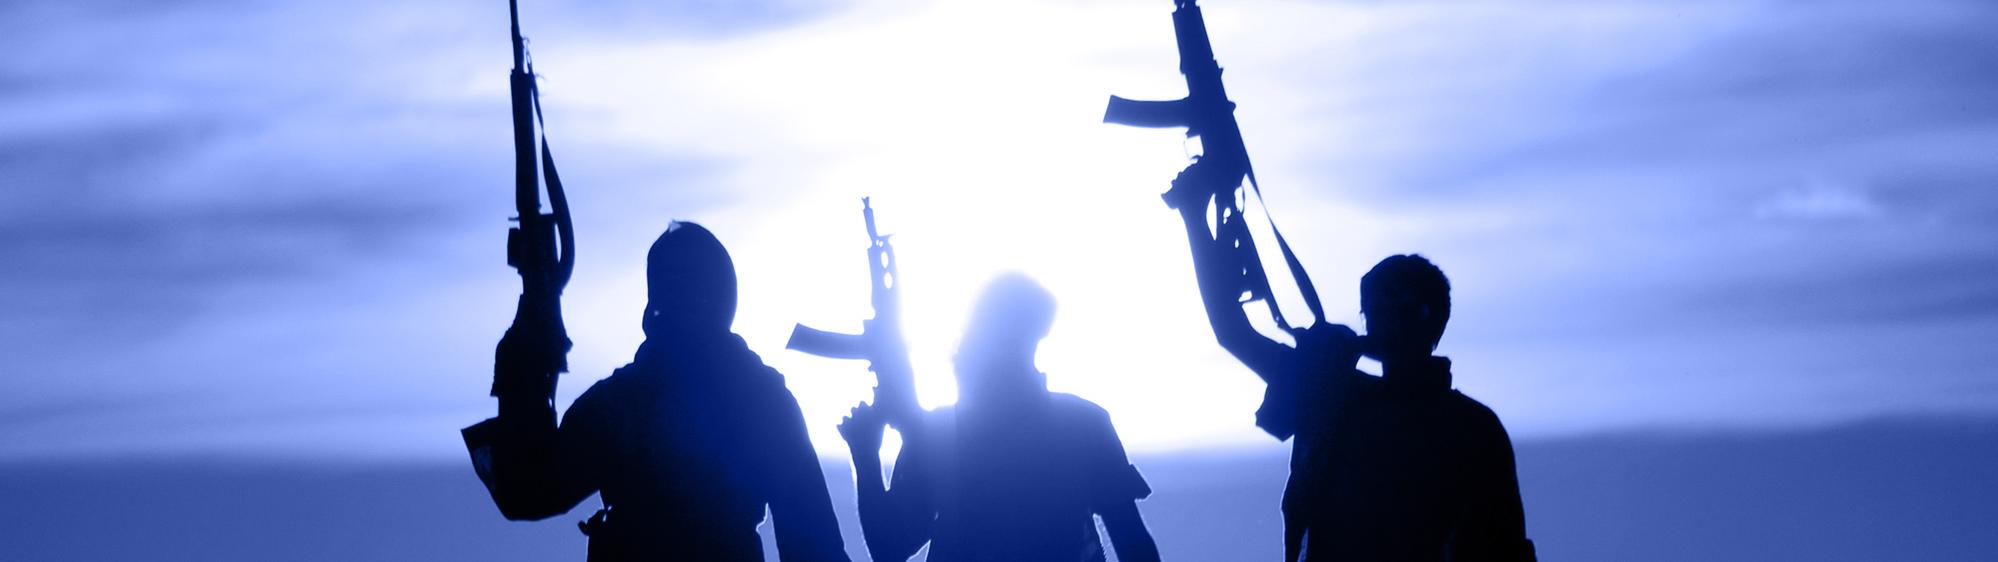 la lutte contre le terrorisme islamiste par la DGSI silhouettes de djihadistes